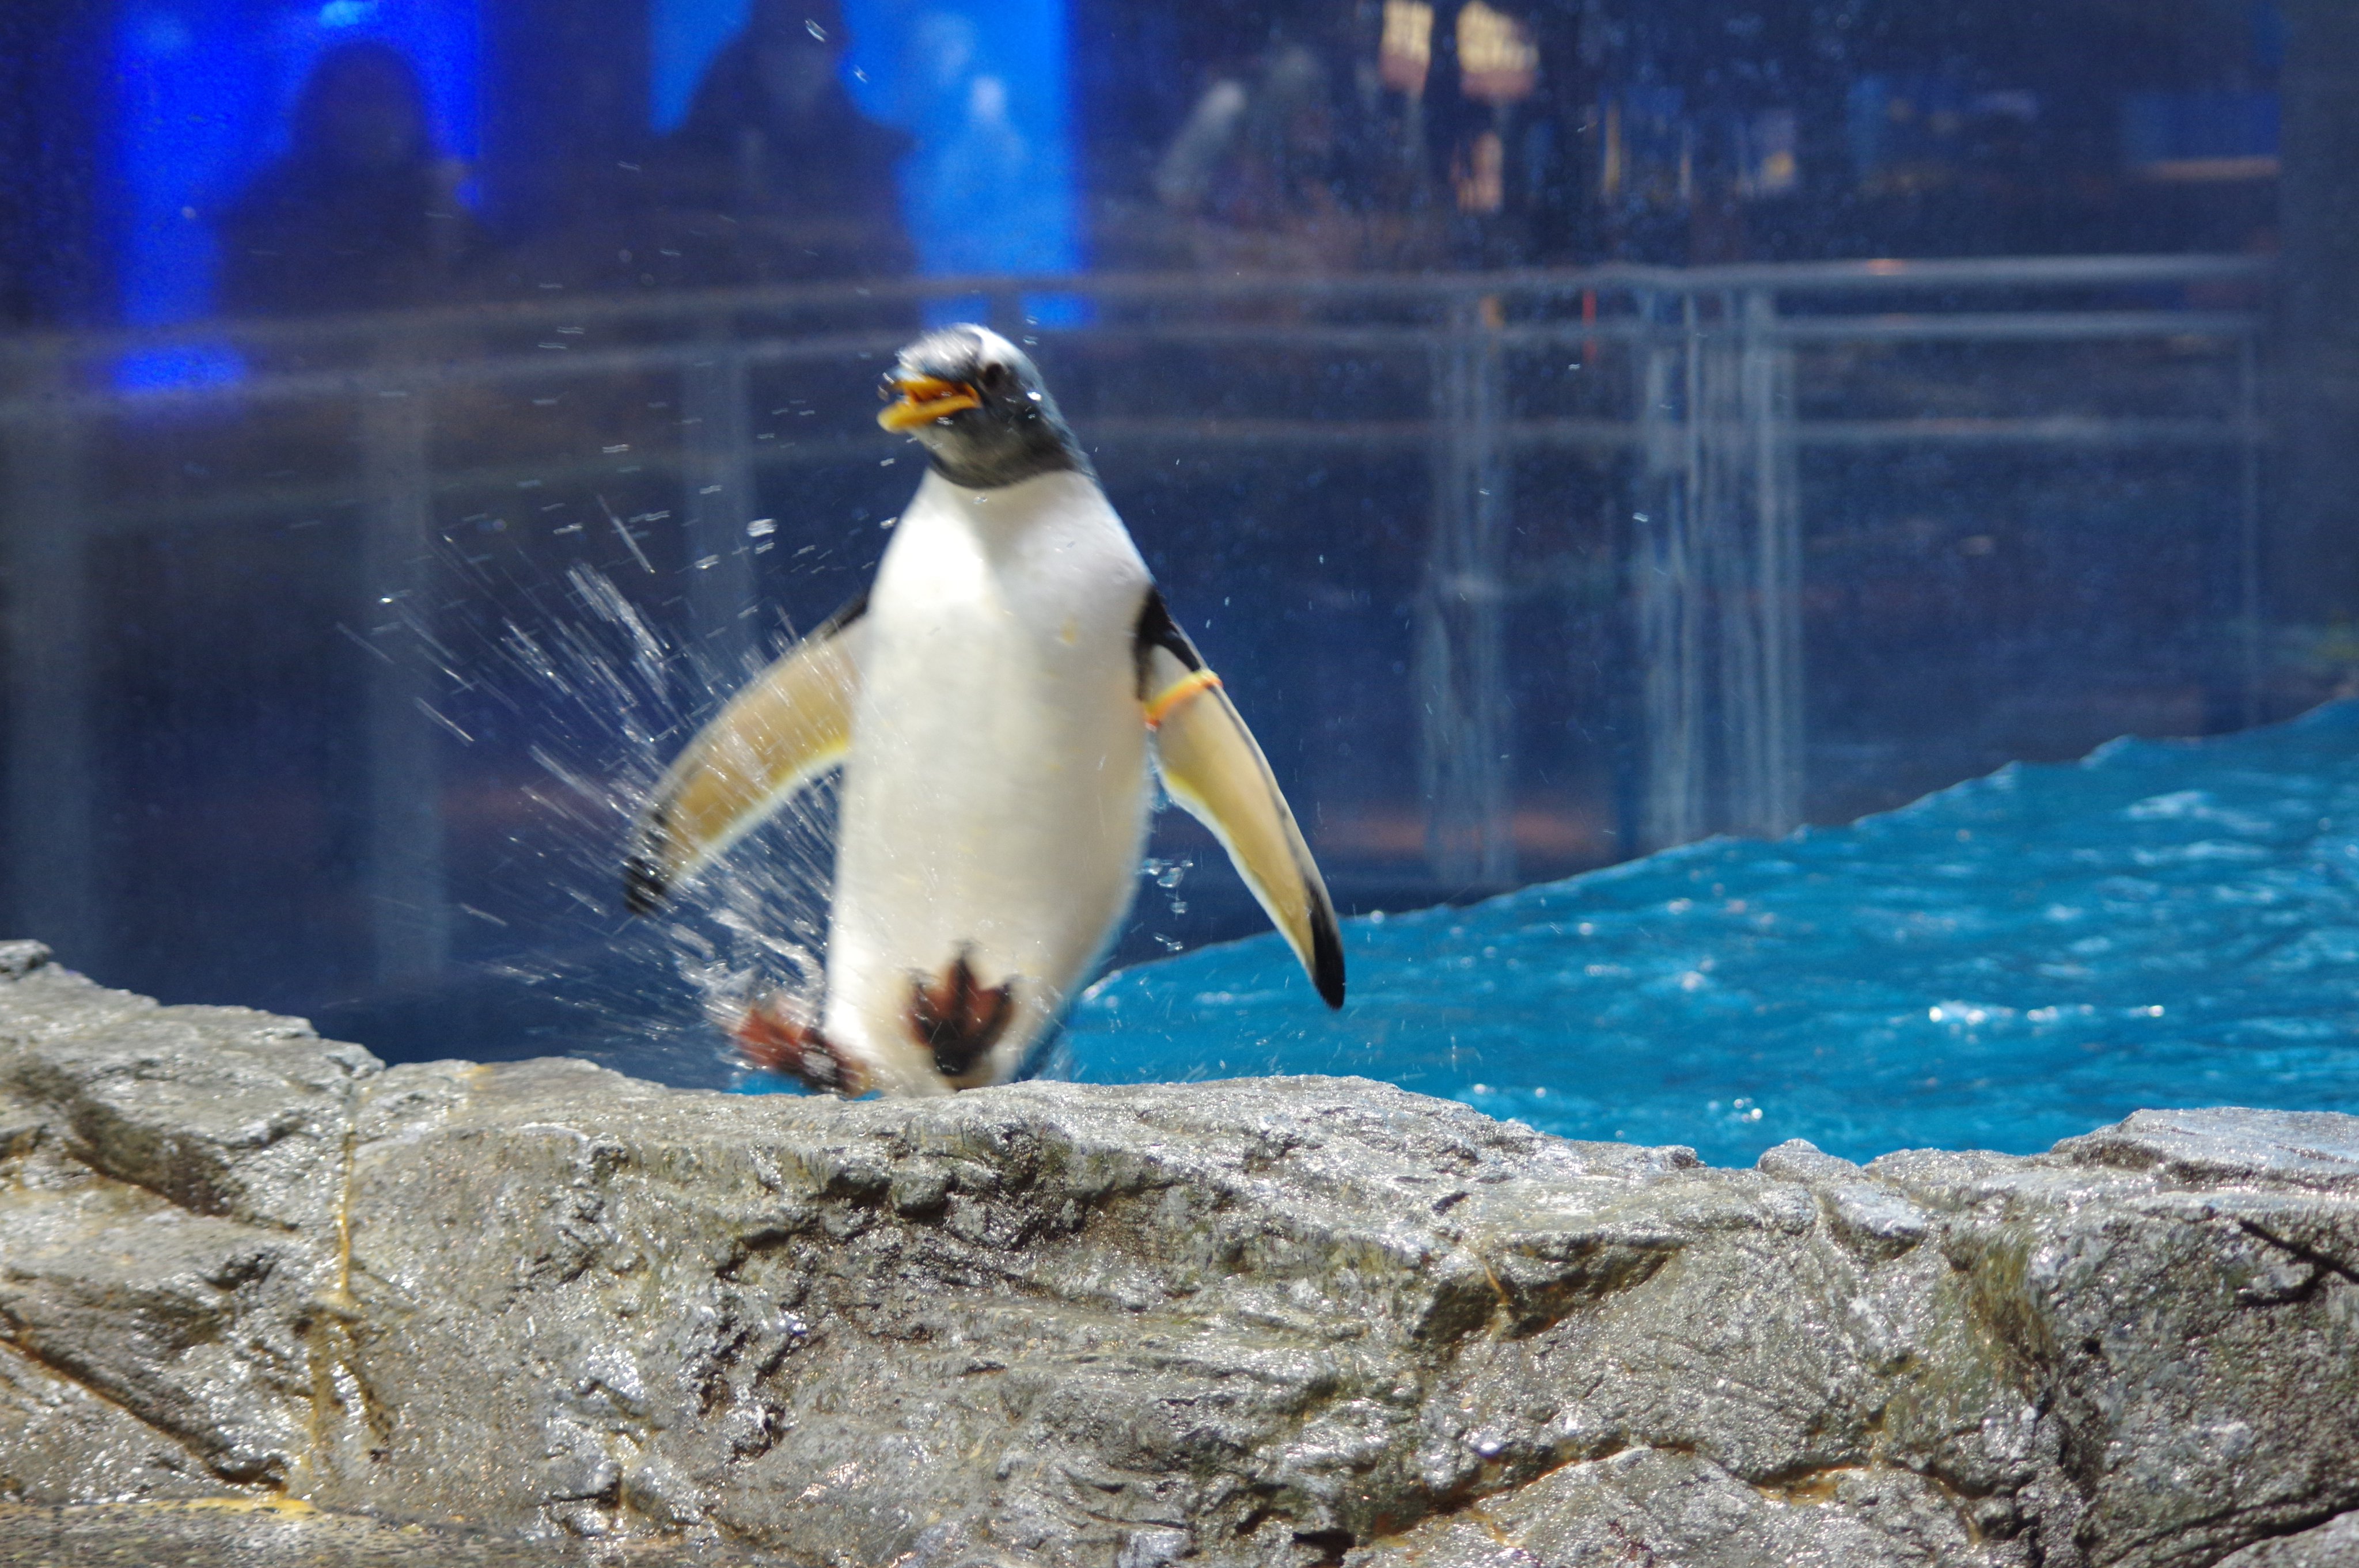 長崎ペンギン水族館 公式 ジェンツーペンギンのジャンプアップ ジェンツーペンギンは プール水面から直接ジャンプして上がってくることができます 長崎ペンギン水族館 ジェンツーペンギン ジャンプアップ 長崎 ペンギン 水族館 九州